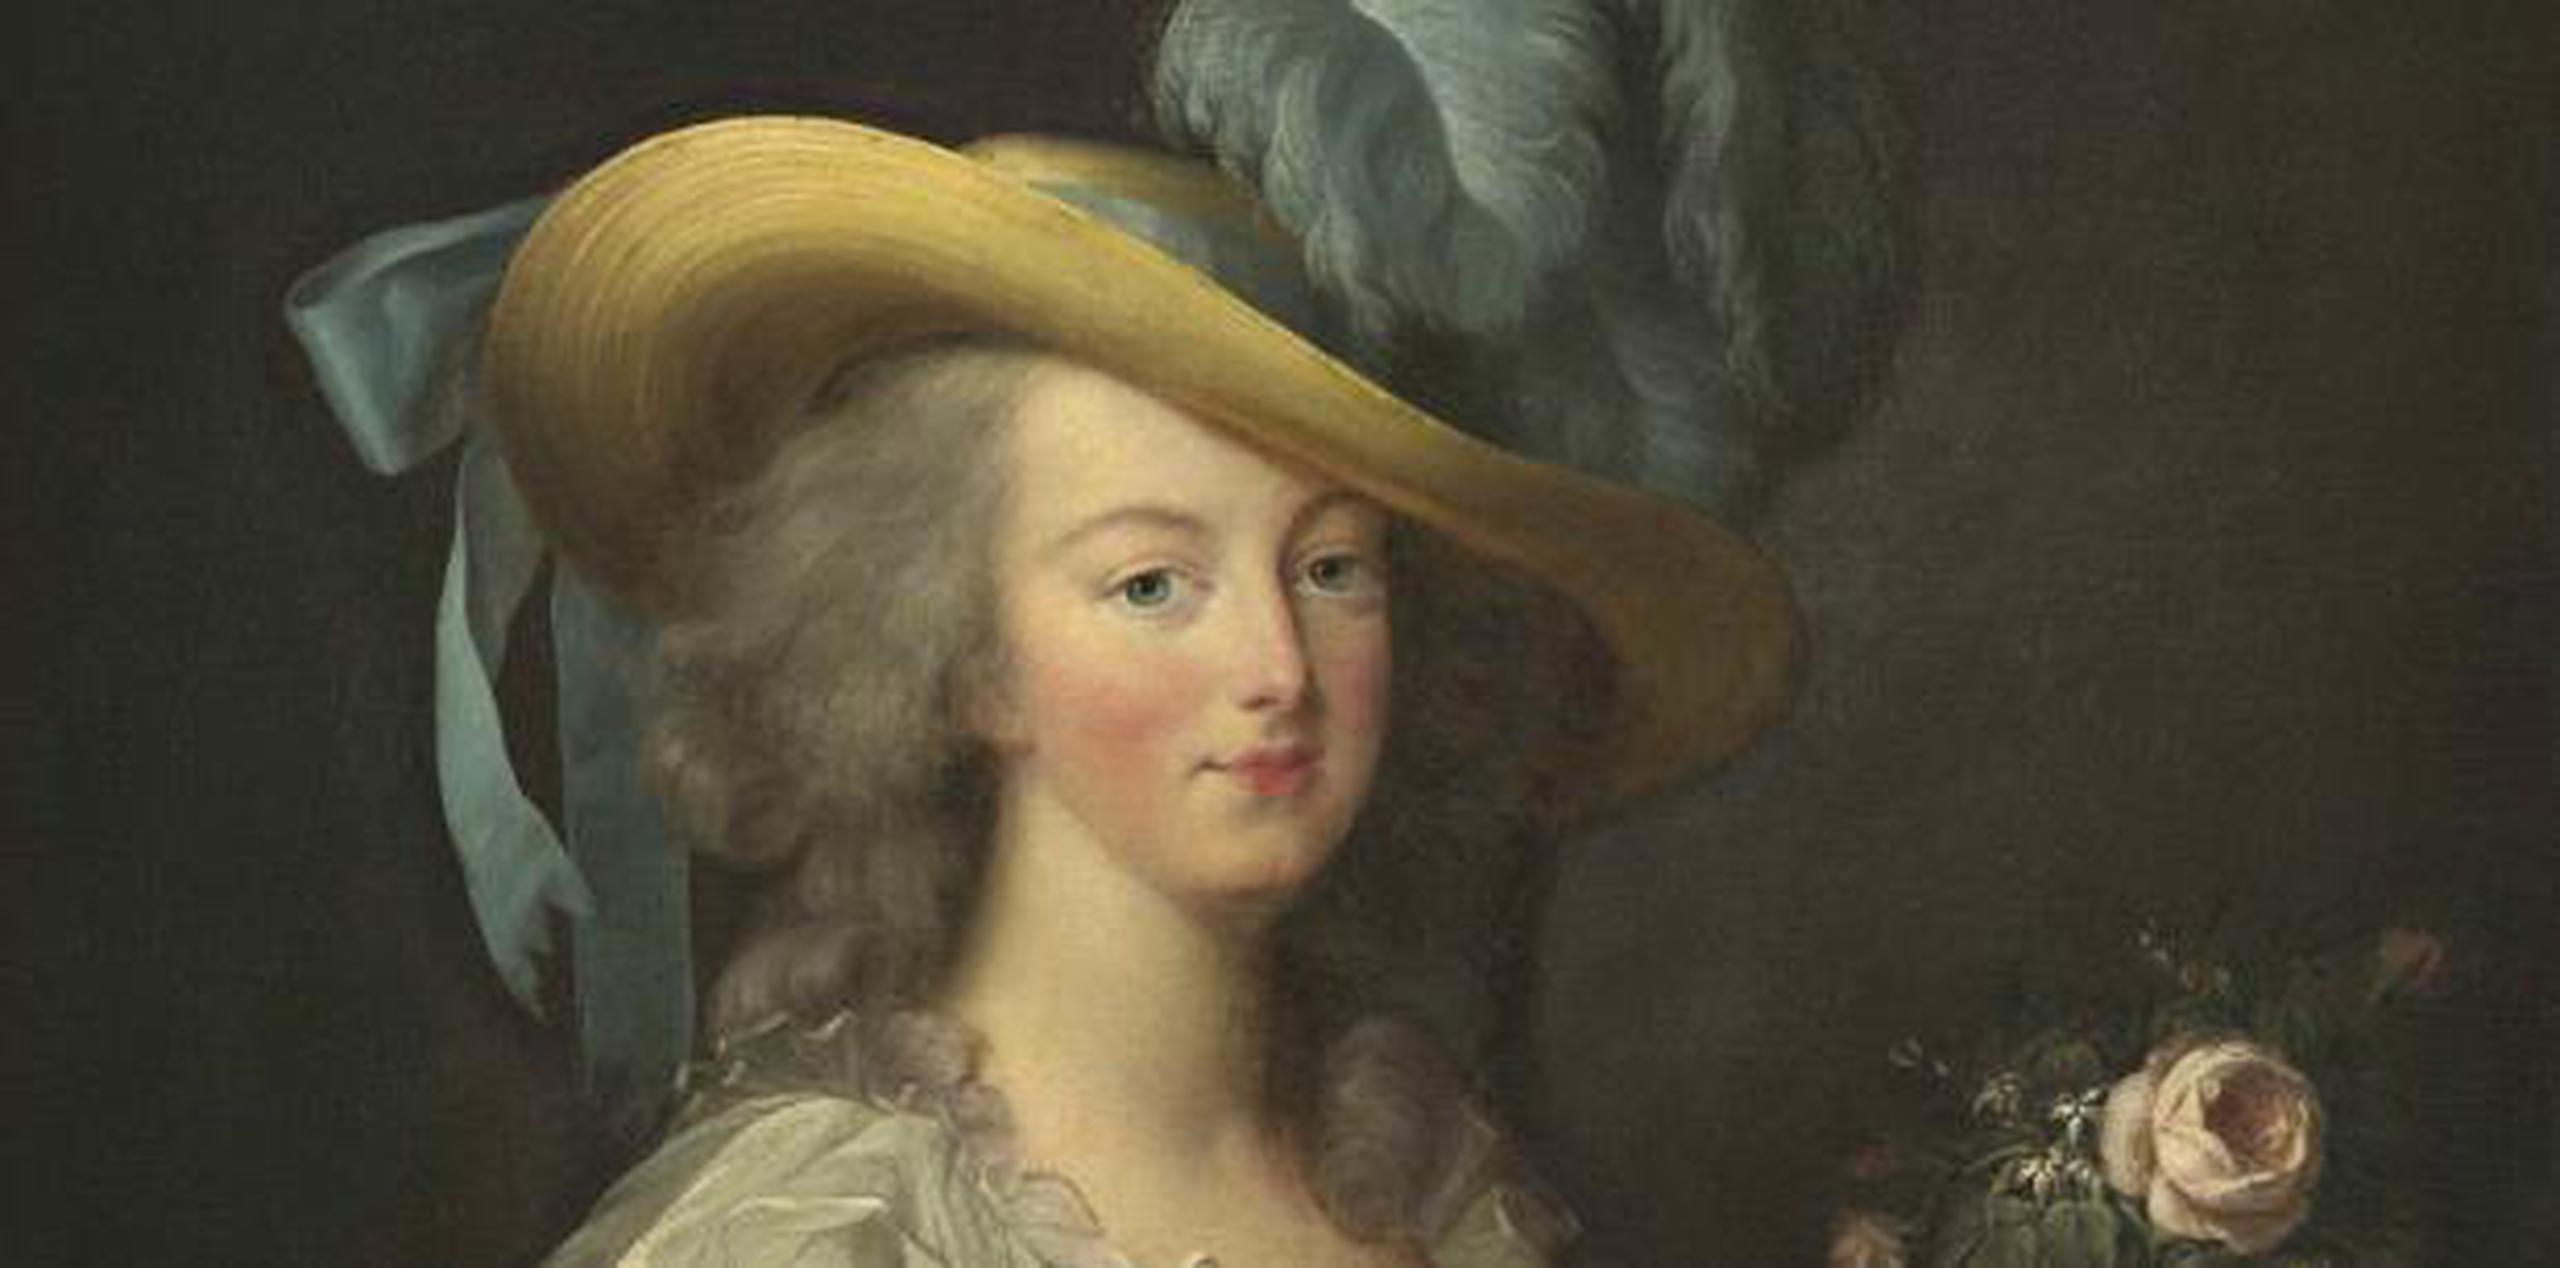 María Antonieta murió guillotinada durante la Revolución Francesa. (Shutterstock)